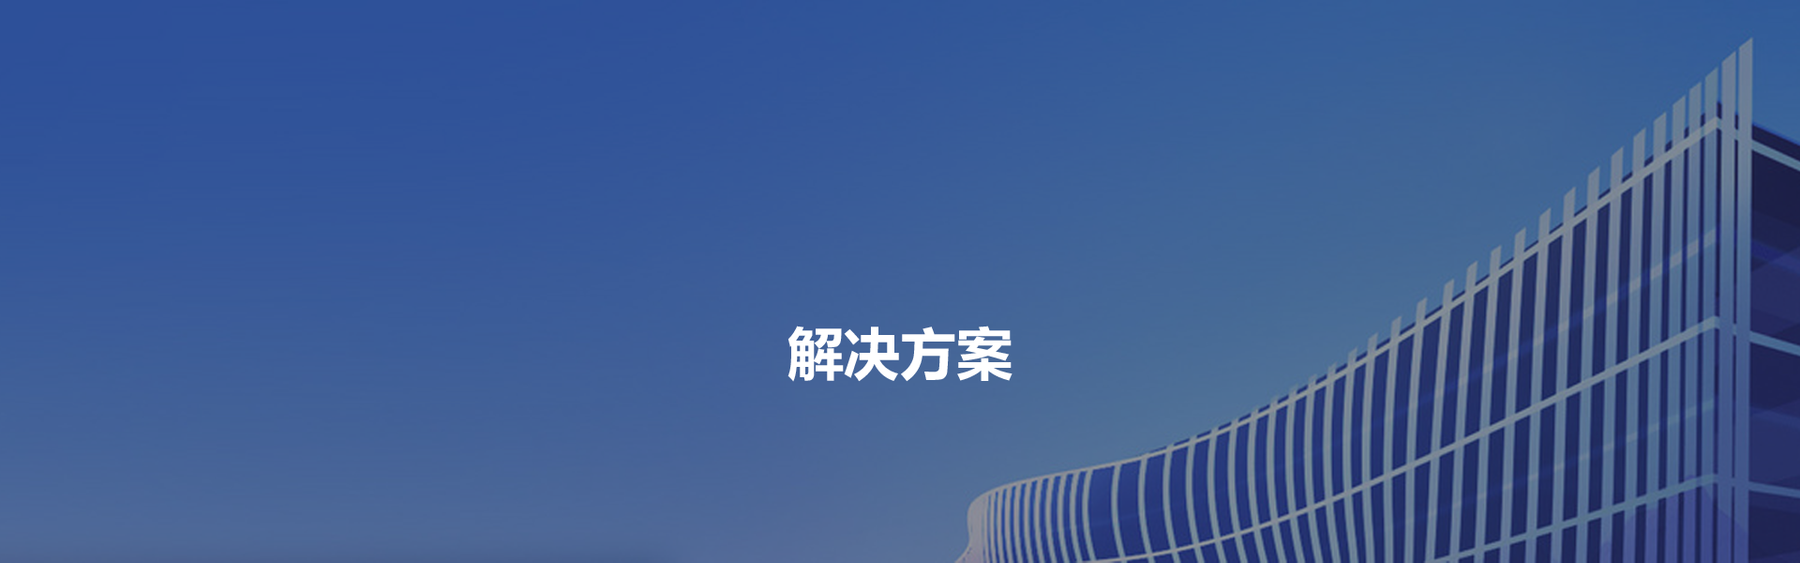 Z6尊龙·凯时(中国)-官方网站_产品8566